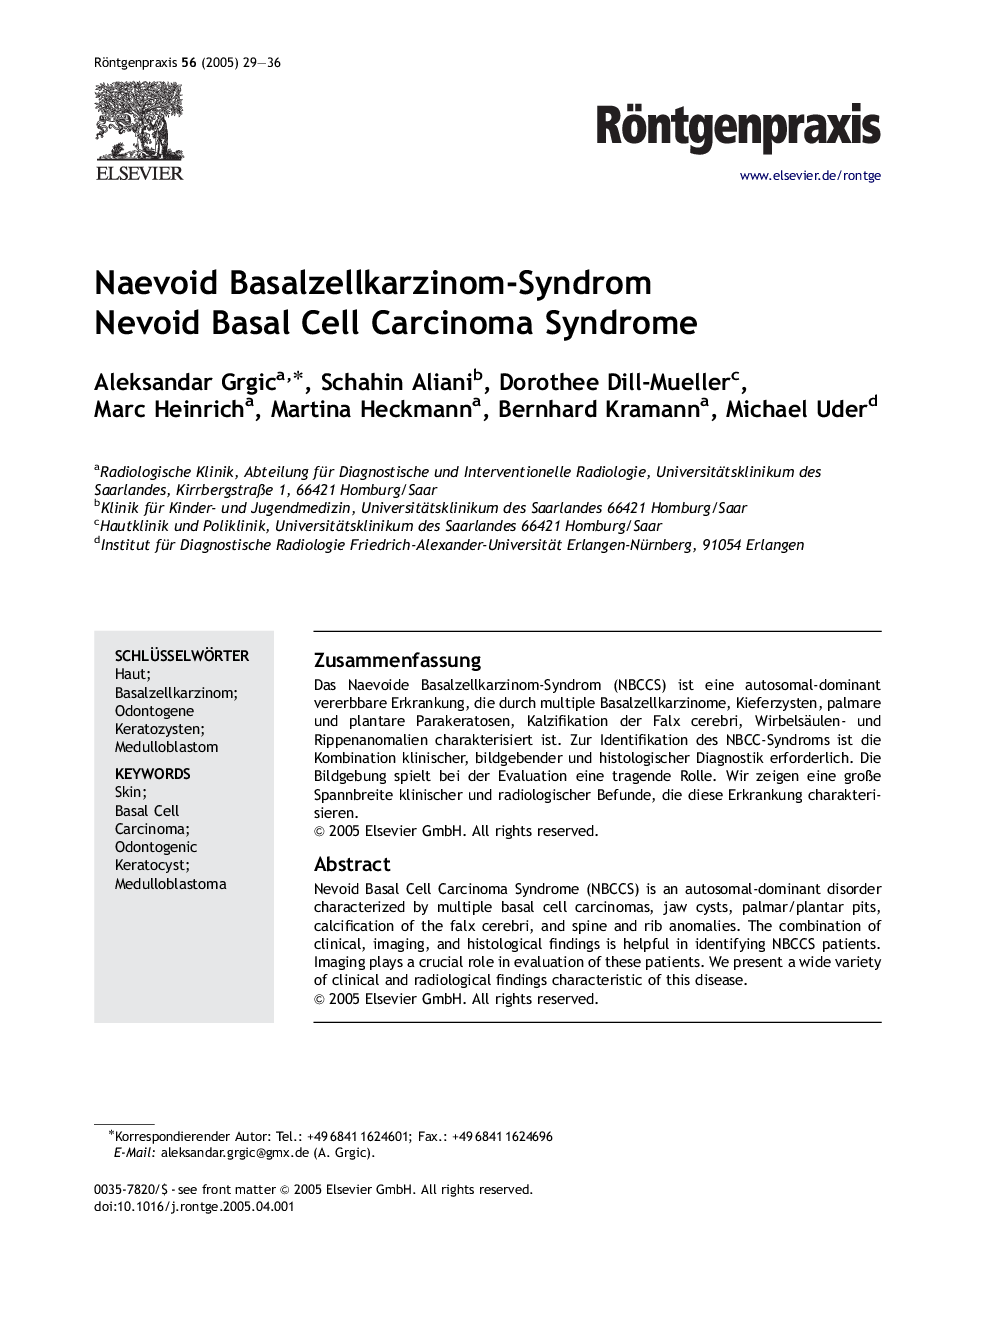 Naevoid Basalzellkarzinom-Syndrom